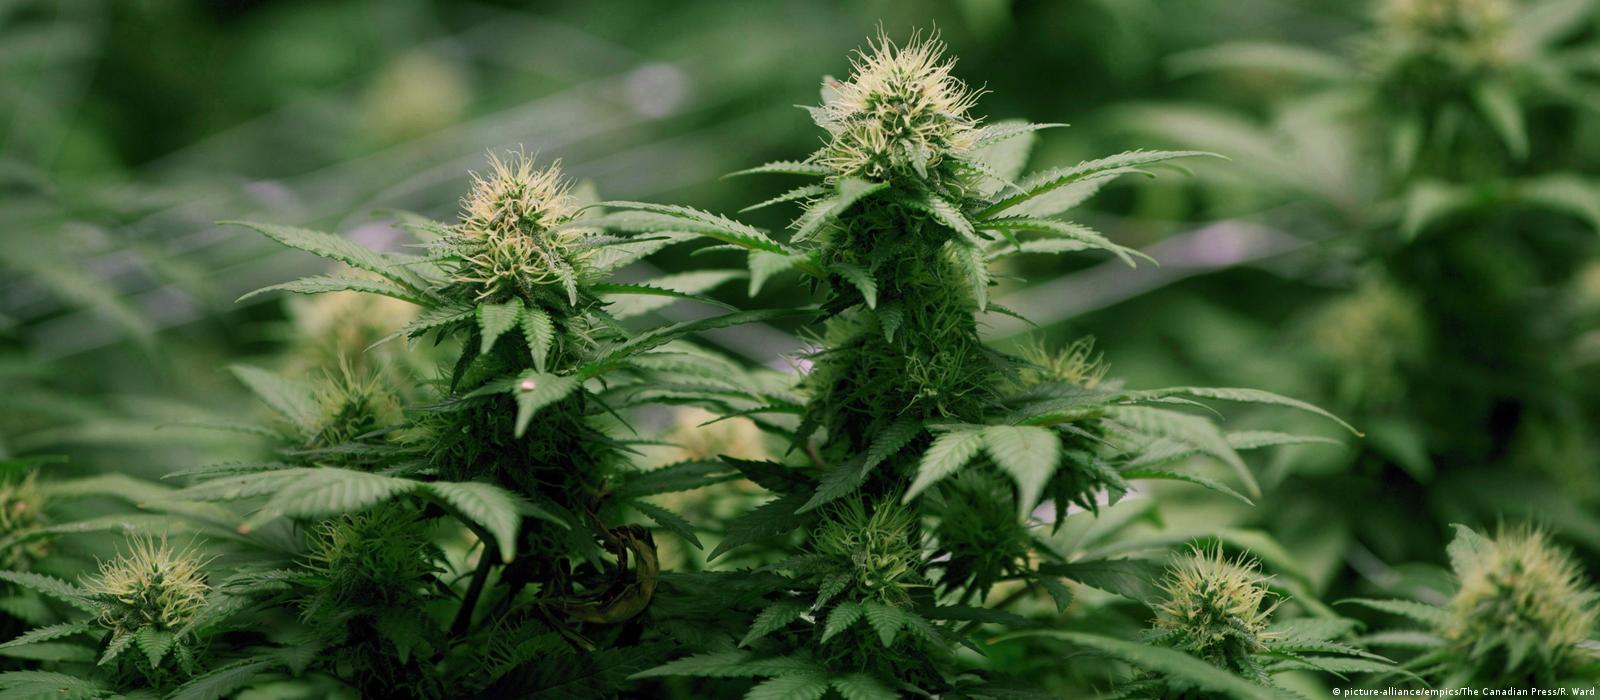 Выращивание марихуаны запрещено урбеч из конопляного семени как принимать